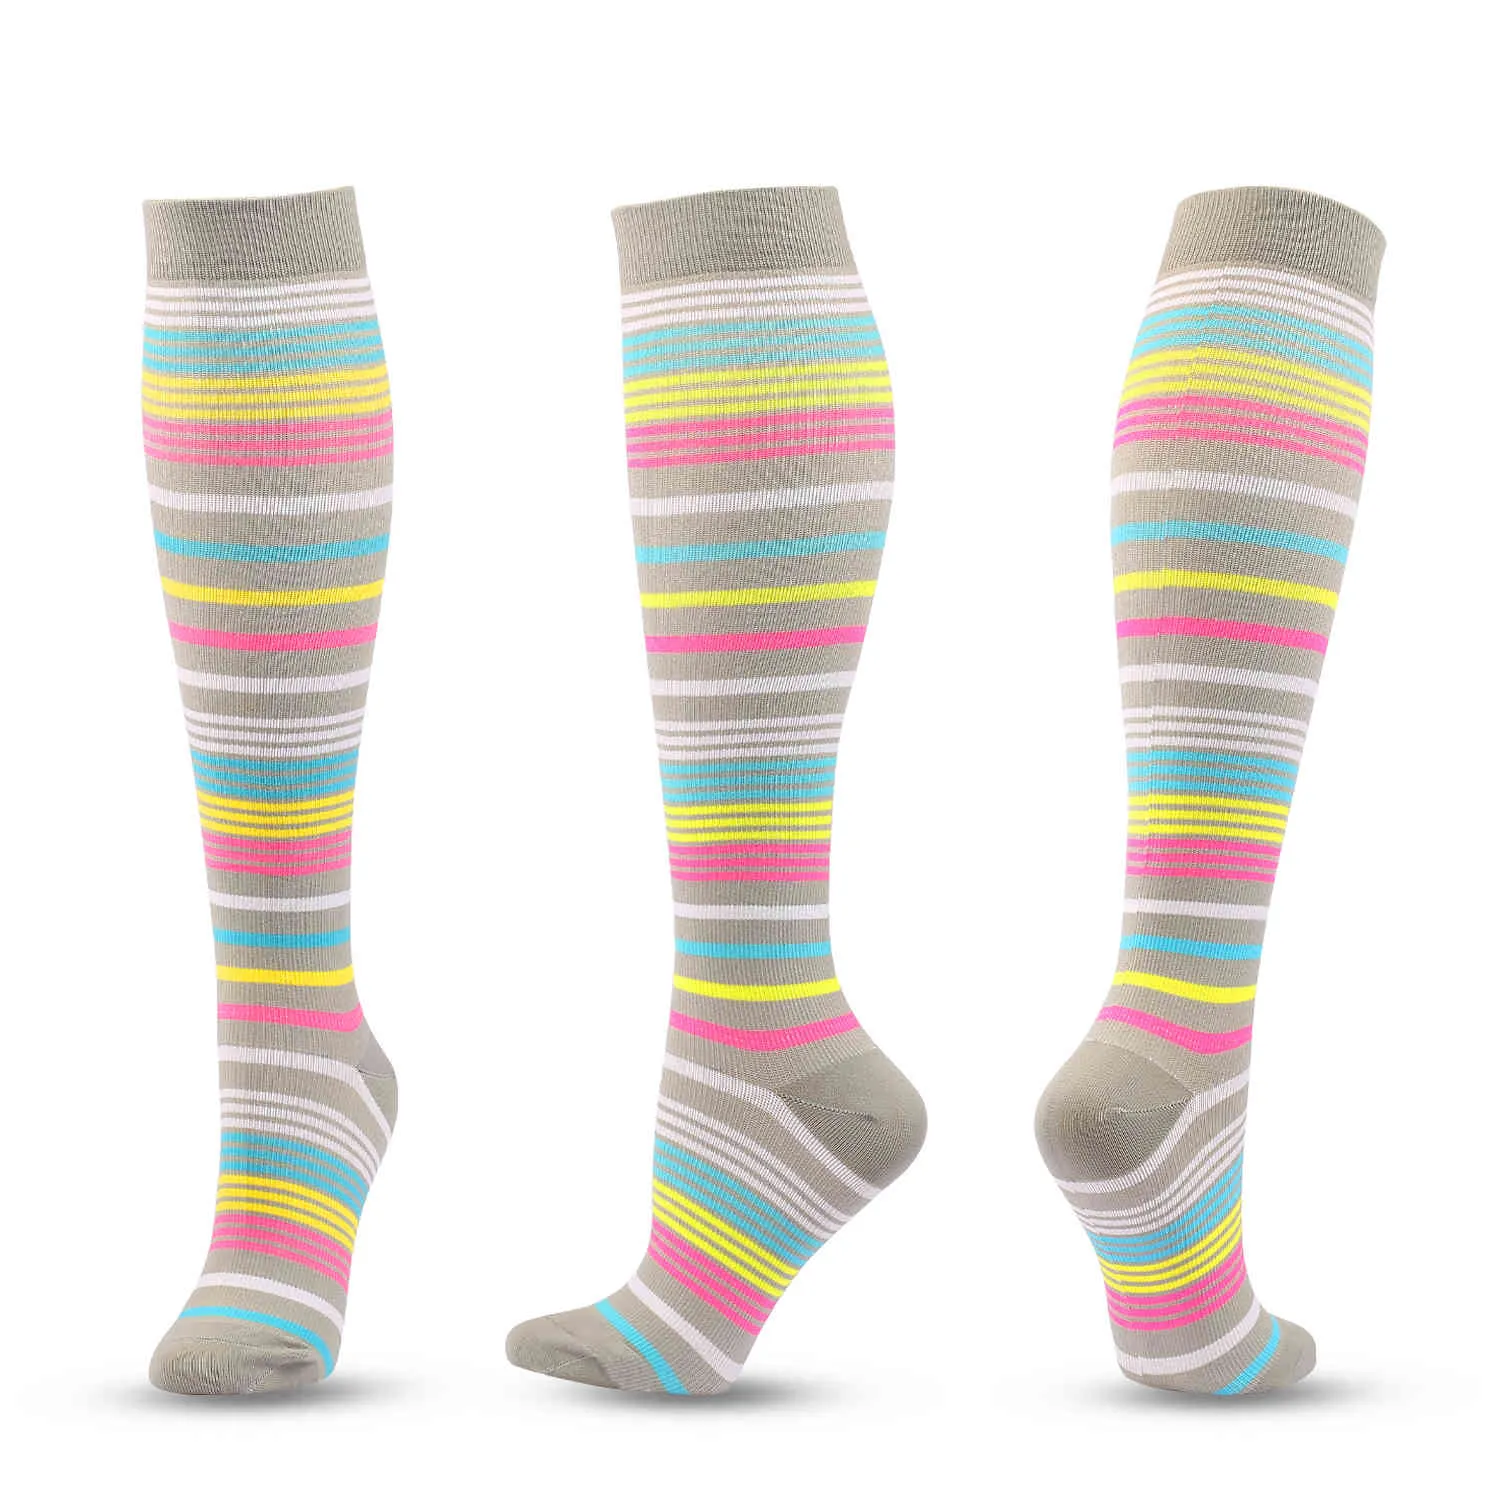 Medias de compresión calcetines de presión para hombres compresa deportes gris claro de color gris claro rayas de pingüino patrón nylon diversión SM9640840